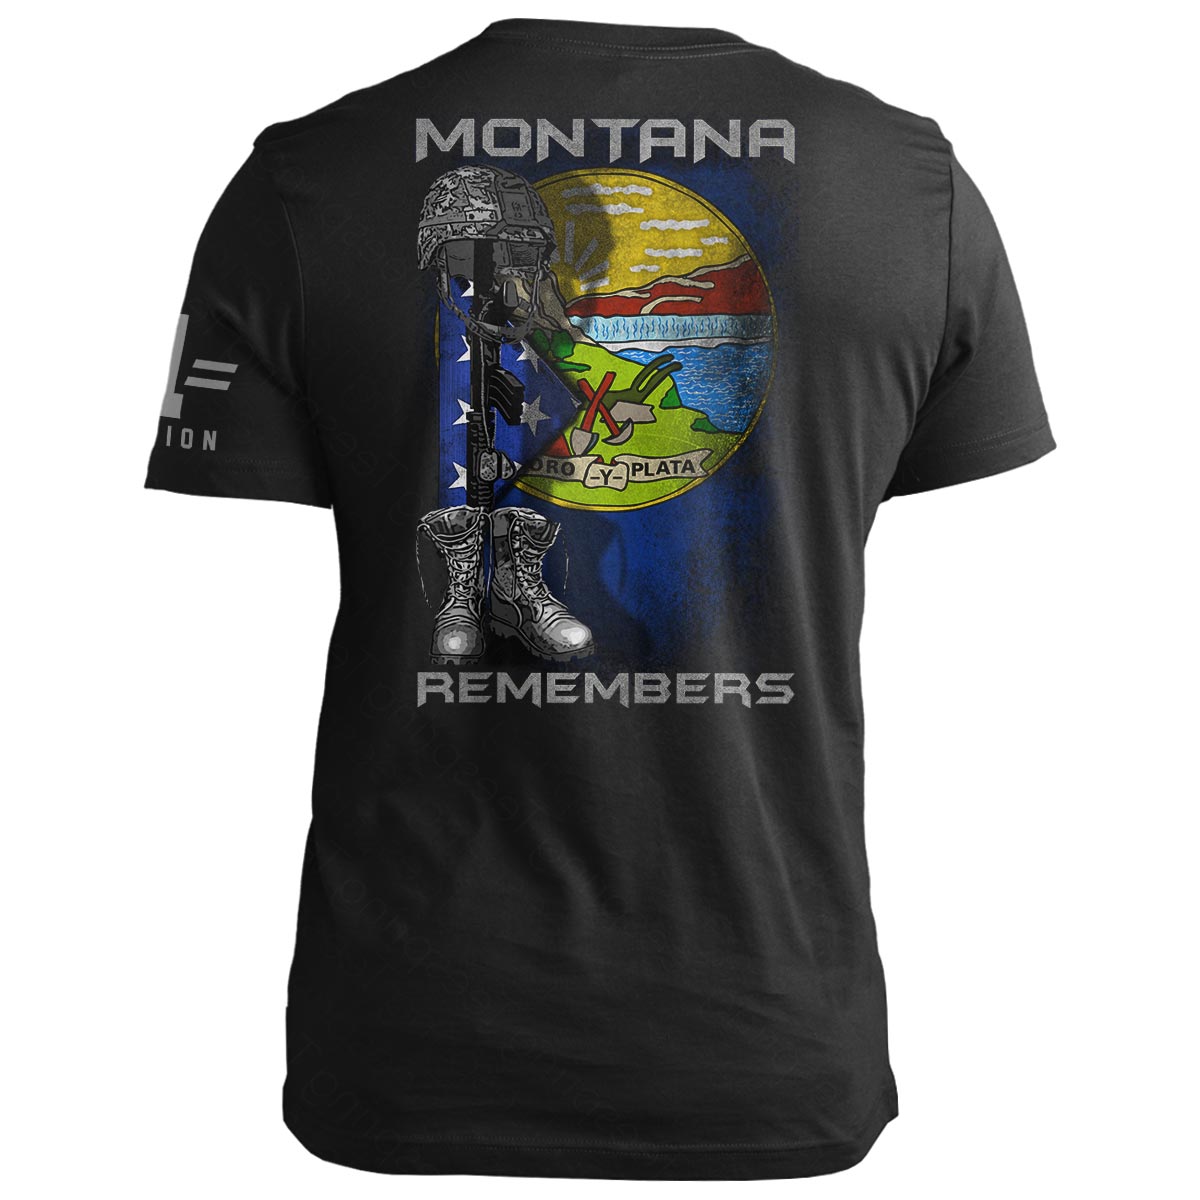 Montana Remembers